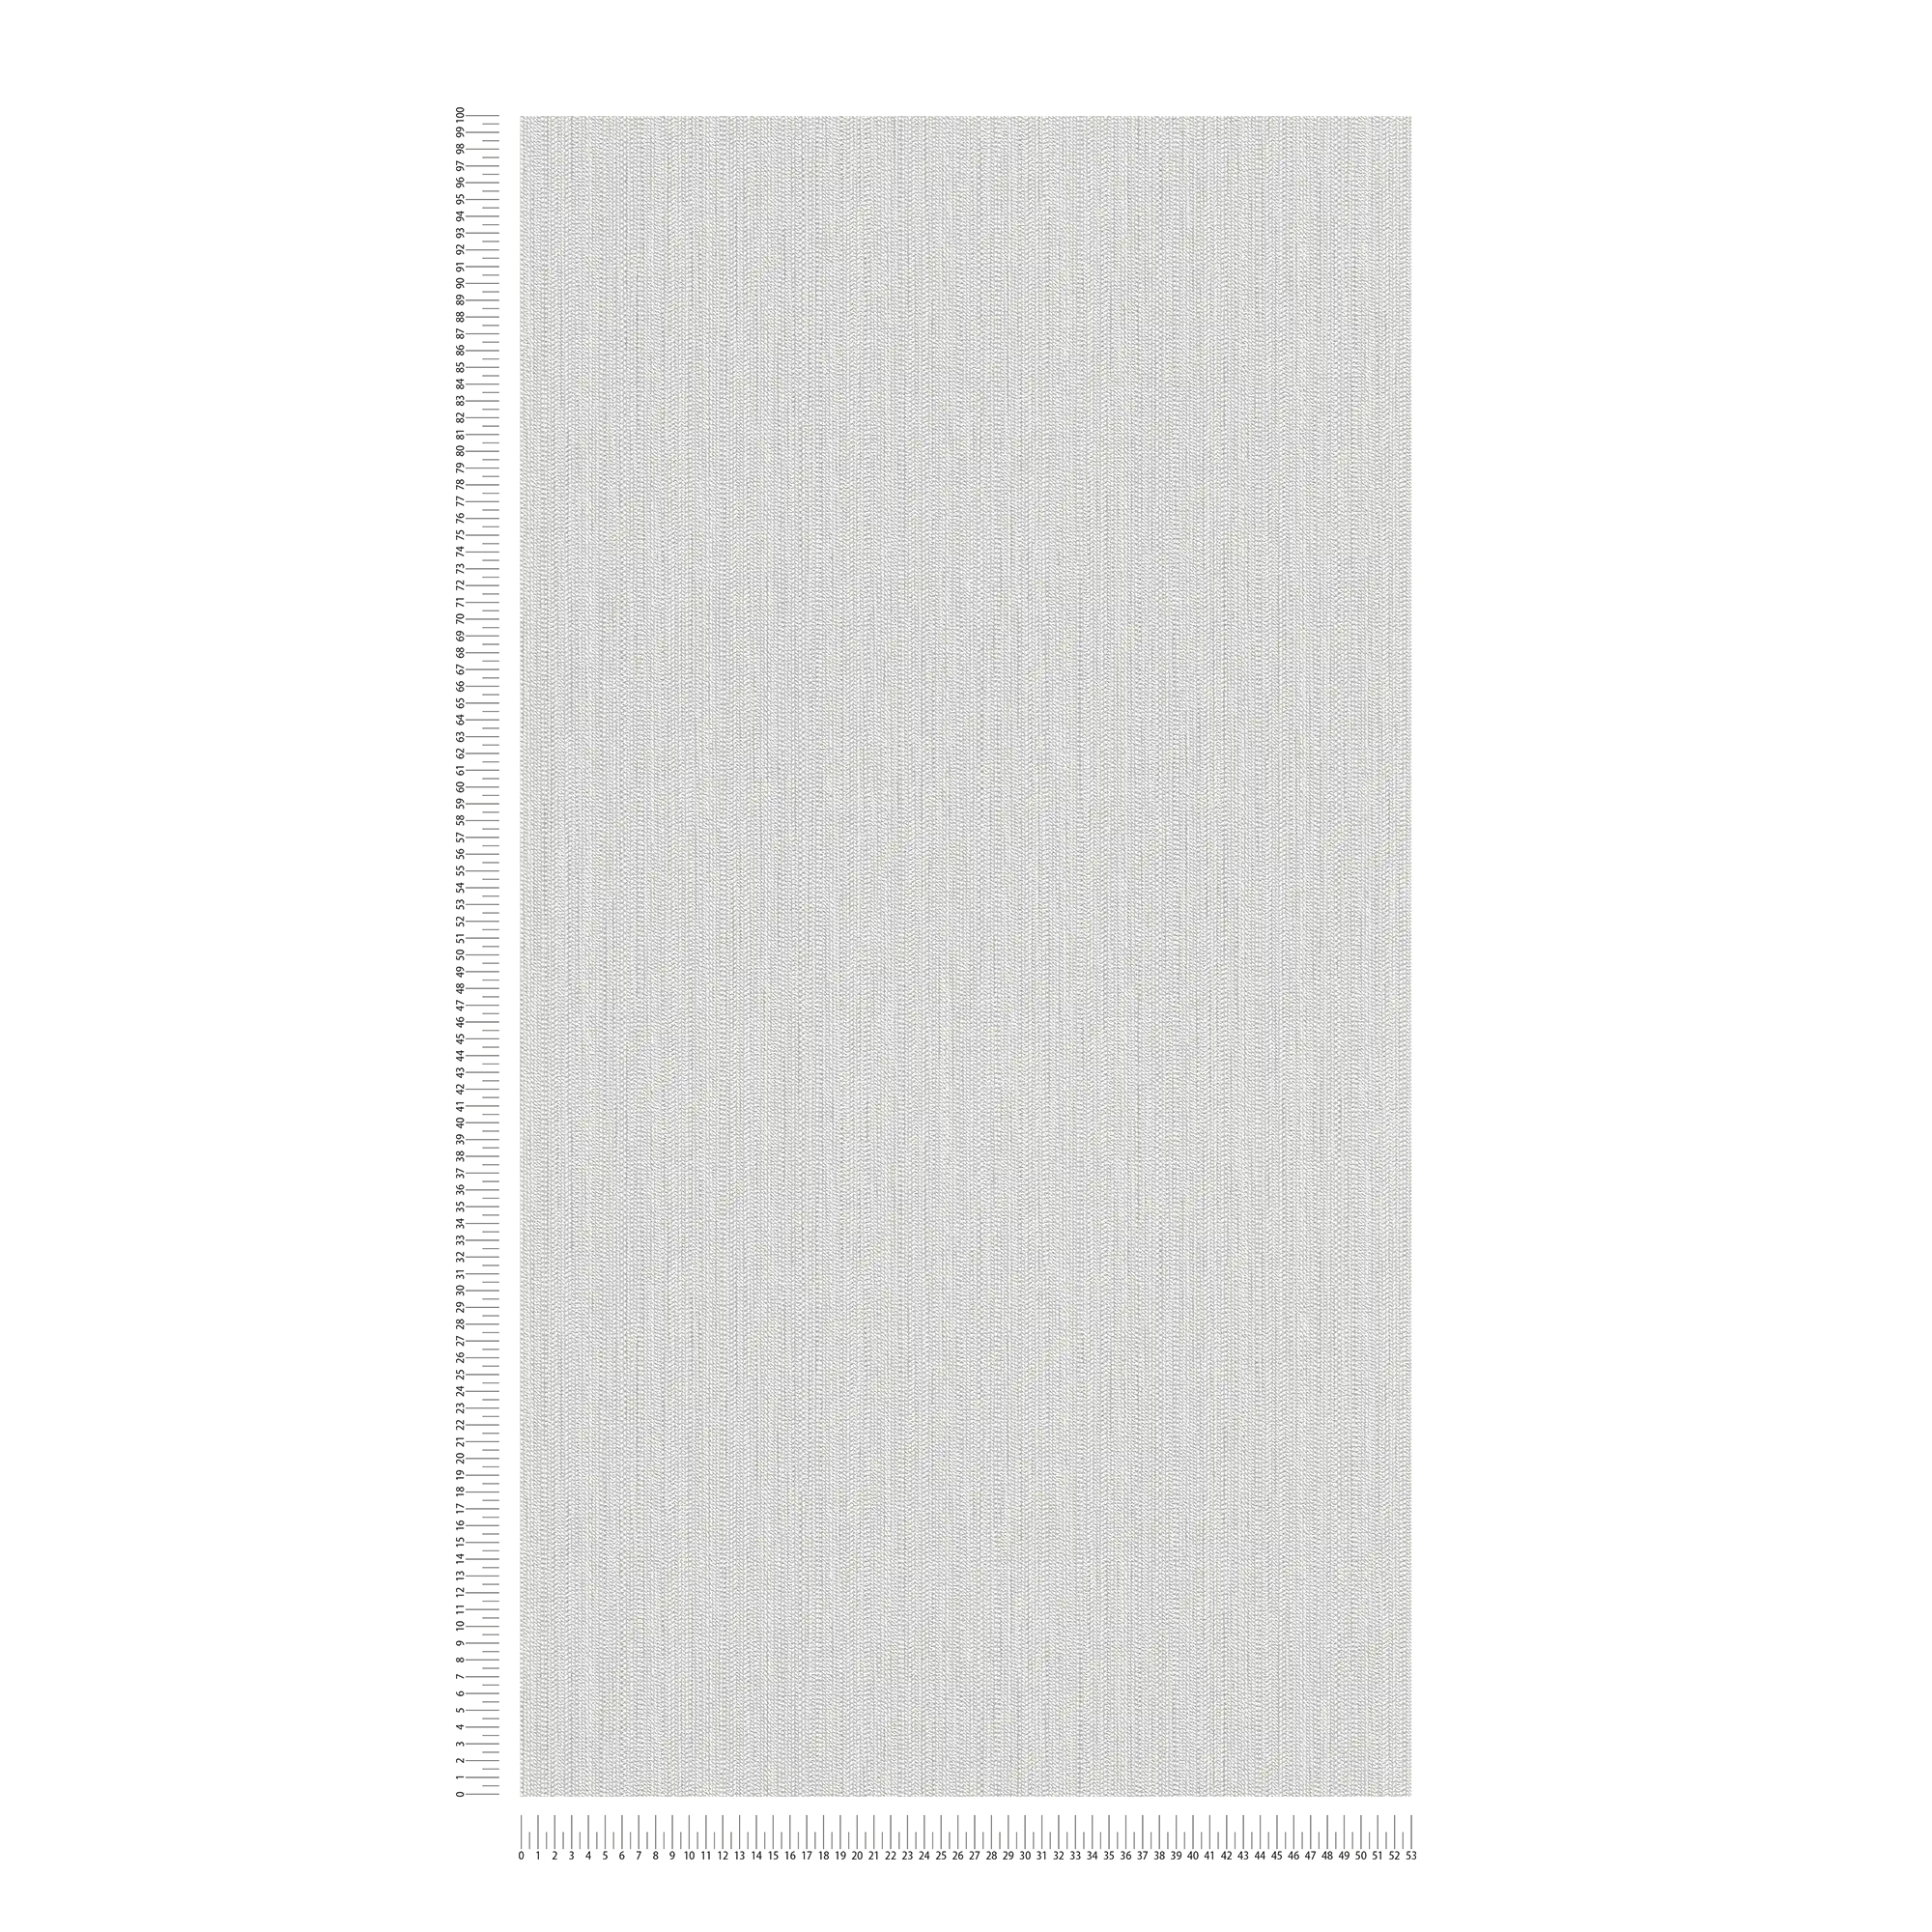             Papier peint intissé avec structure torsadée - blanc, gris clair
        